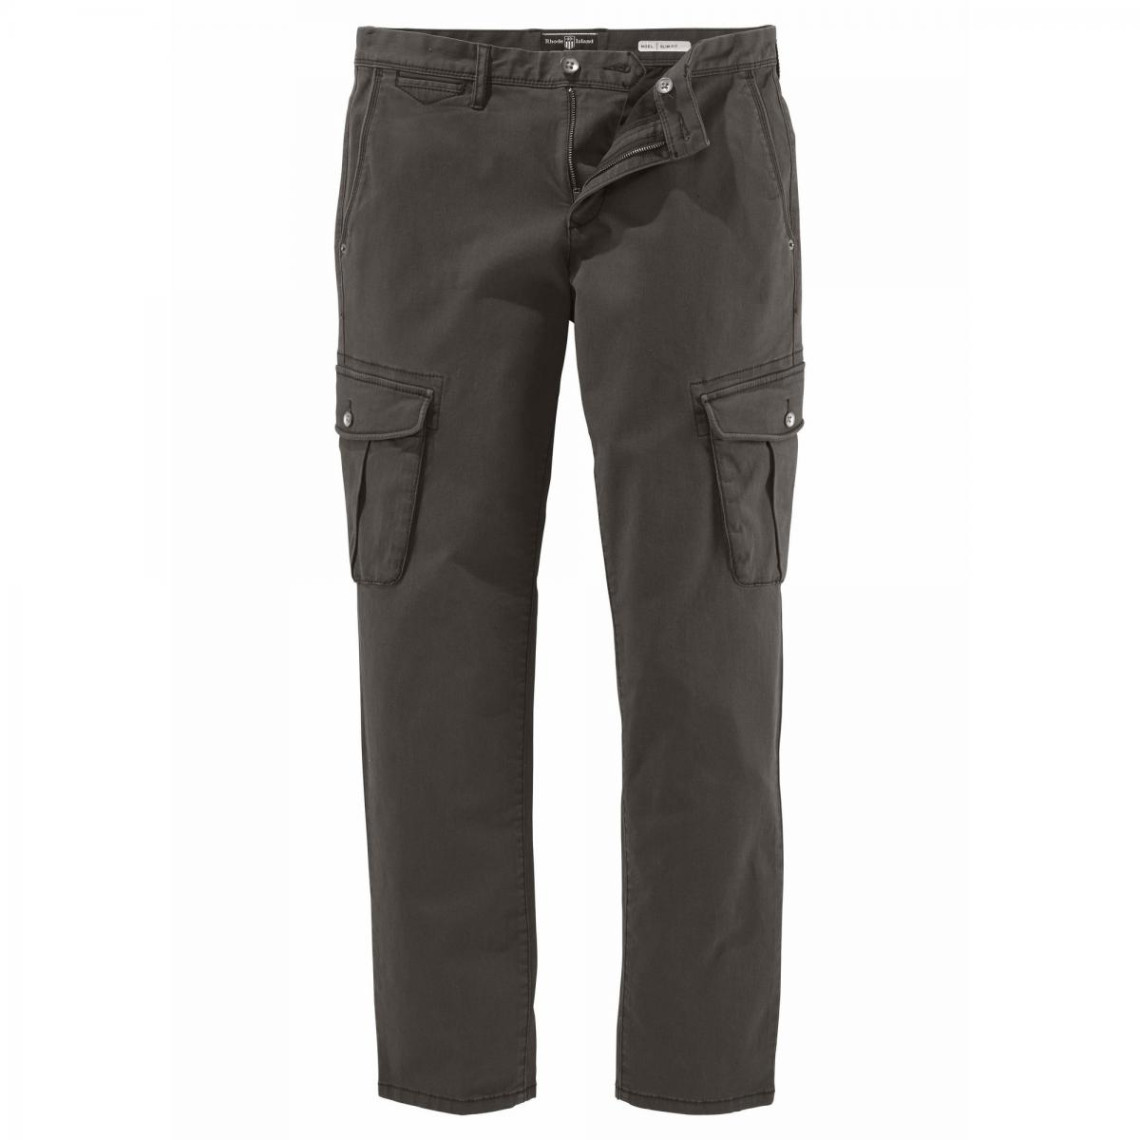 Nouveau Mod/èLe de Sport Droit lhiver /Épaissir Militaire LINSINCH Pantalon Cargo Homme Jeans de Travail Combinaison Multi-Poches Ext/éRieure D/ét/é pour Hommes